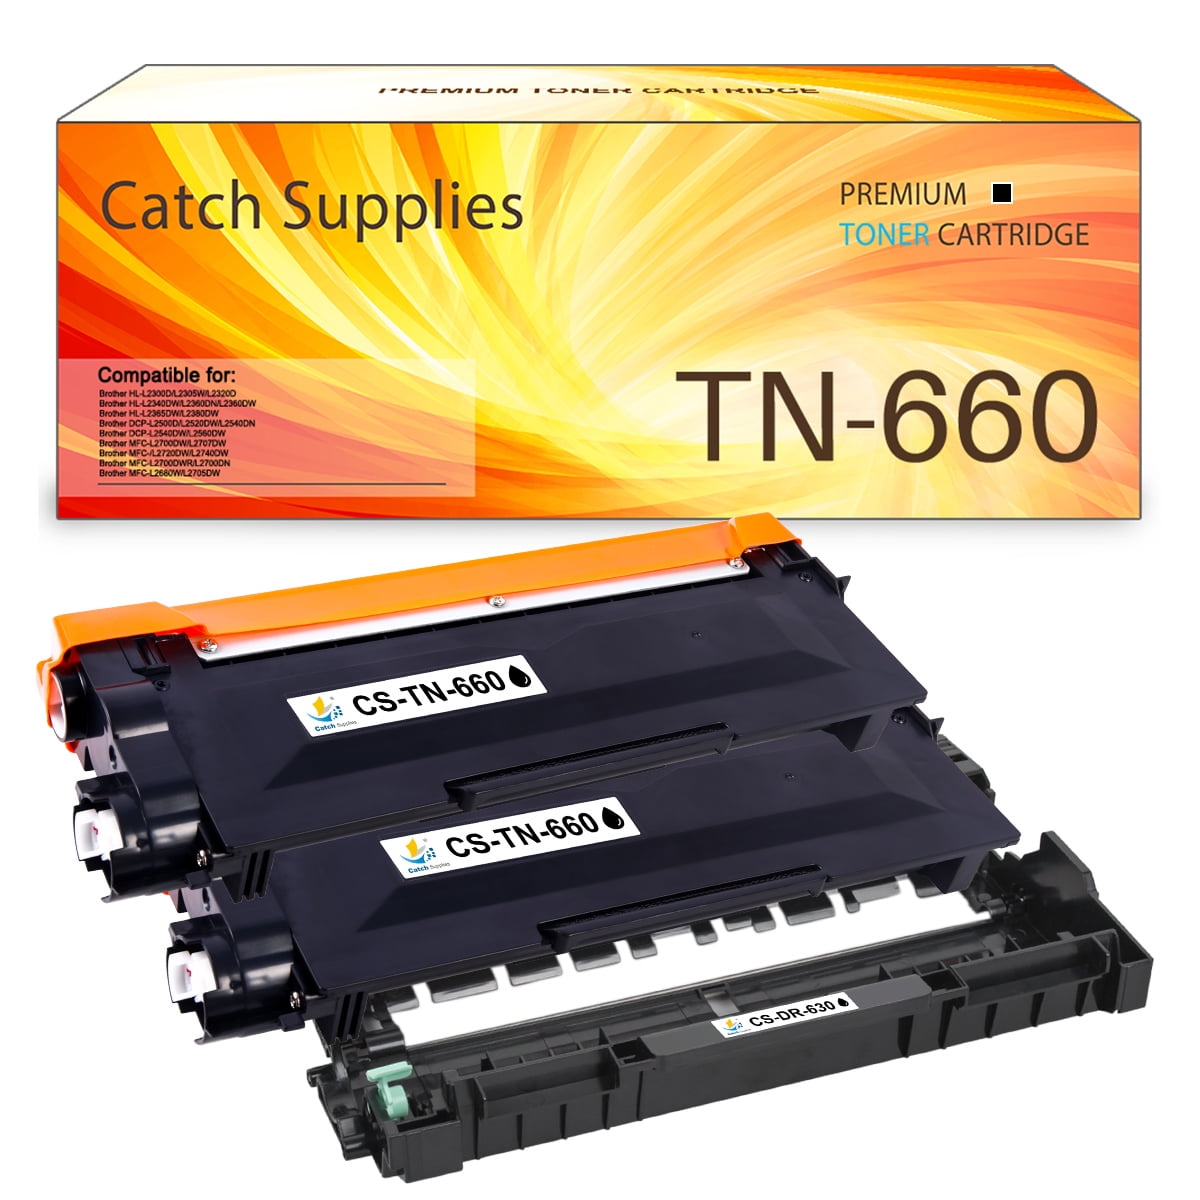 Catch Supplies Compatible TN660 Toner & DR630 Drum Unit for Brother HL-L2340DW DCP-L2560DW (Black 2*Toner 1*Drum) - Walmart.com